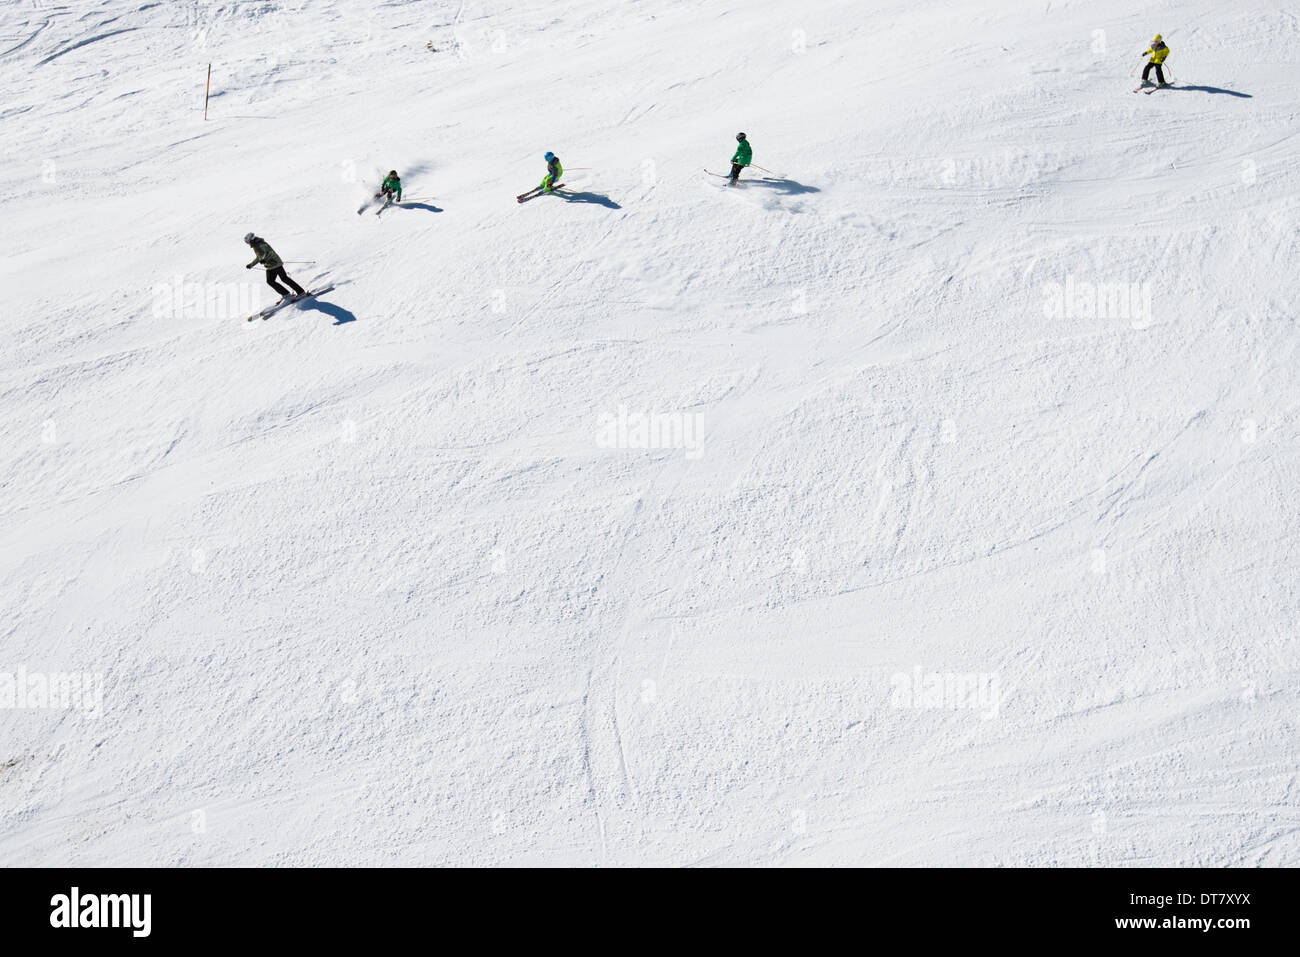 Sciatore ride su una pendenza preparati presso la stazione sciistica di Mayrhofen in Tirolo, Austria. - Dicembre 2013 Foto Stock